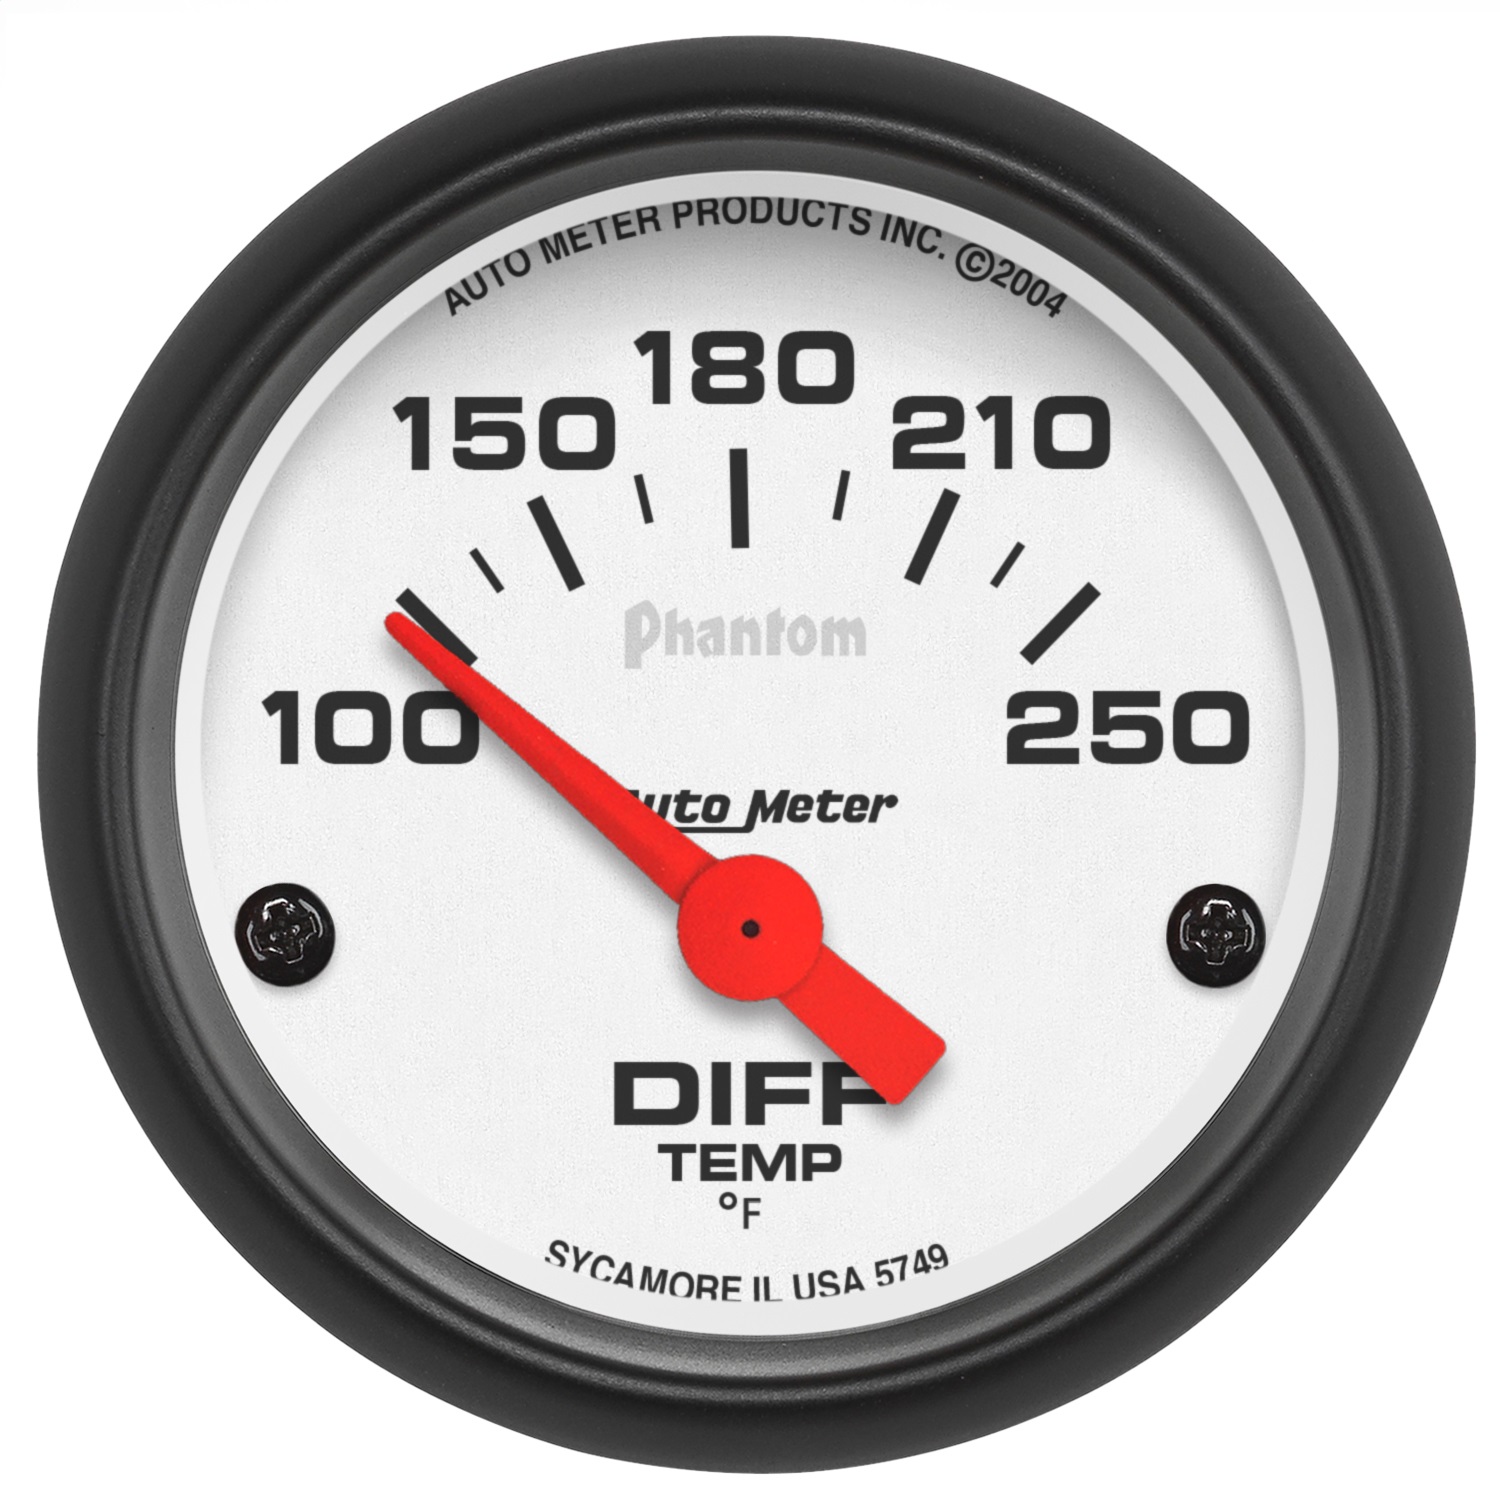 Auto Meter Auto Meter 5749 Phantom; Electric Differential Temperature Gauge